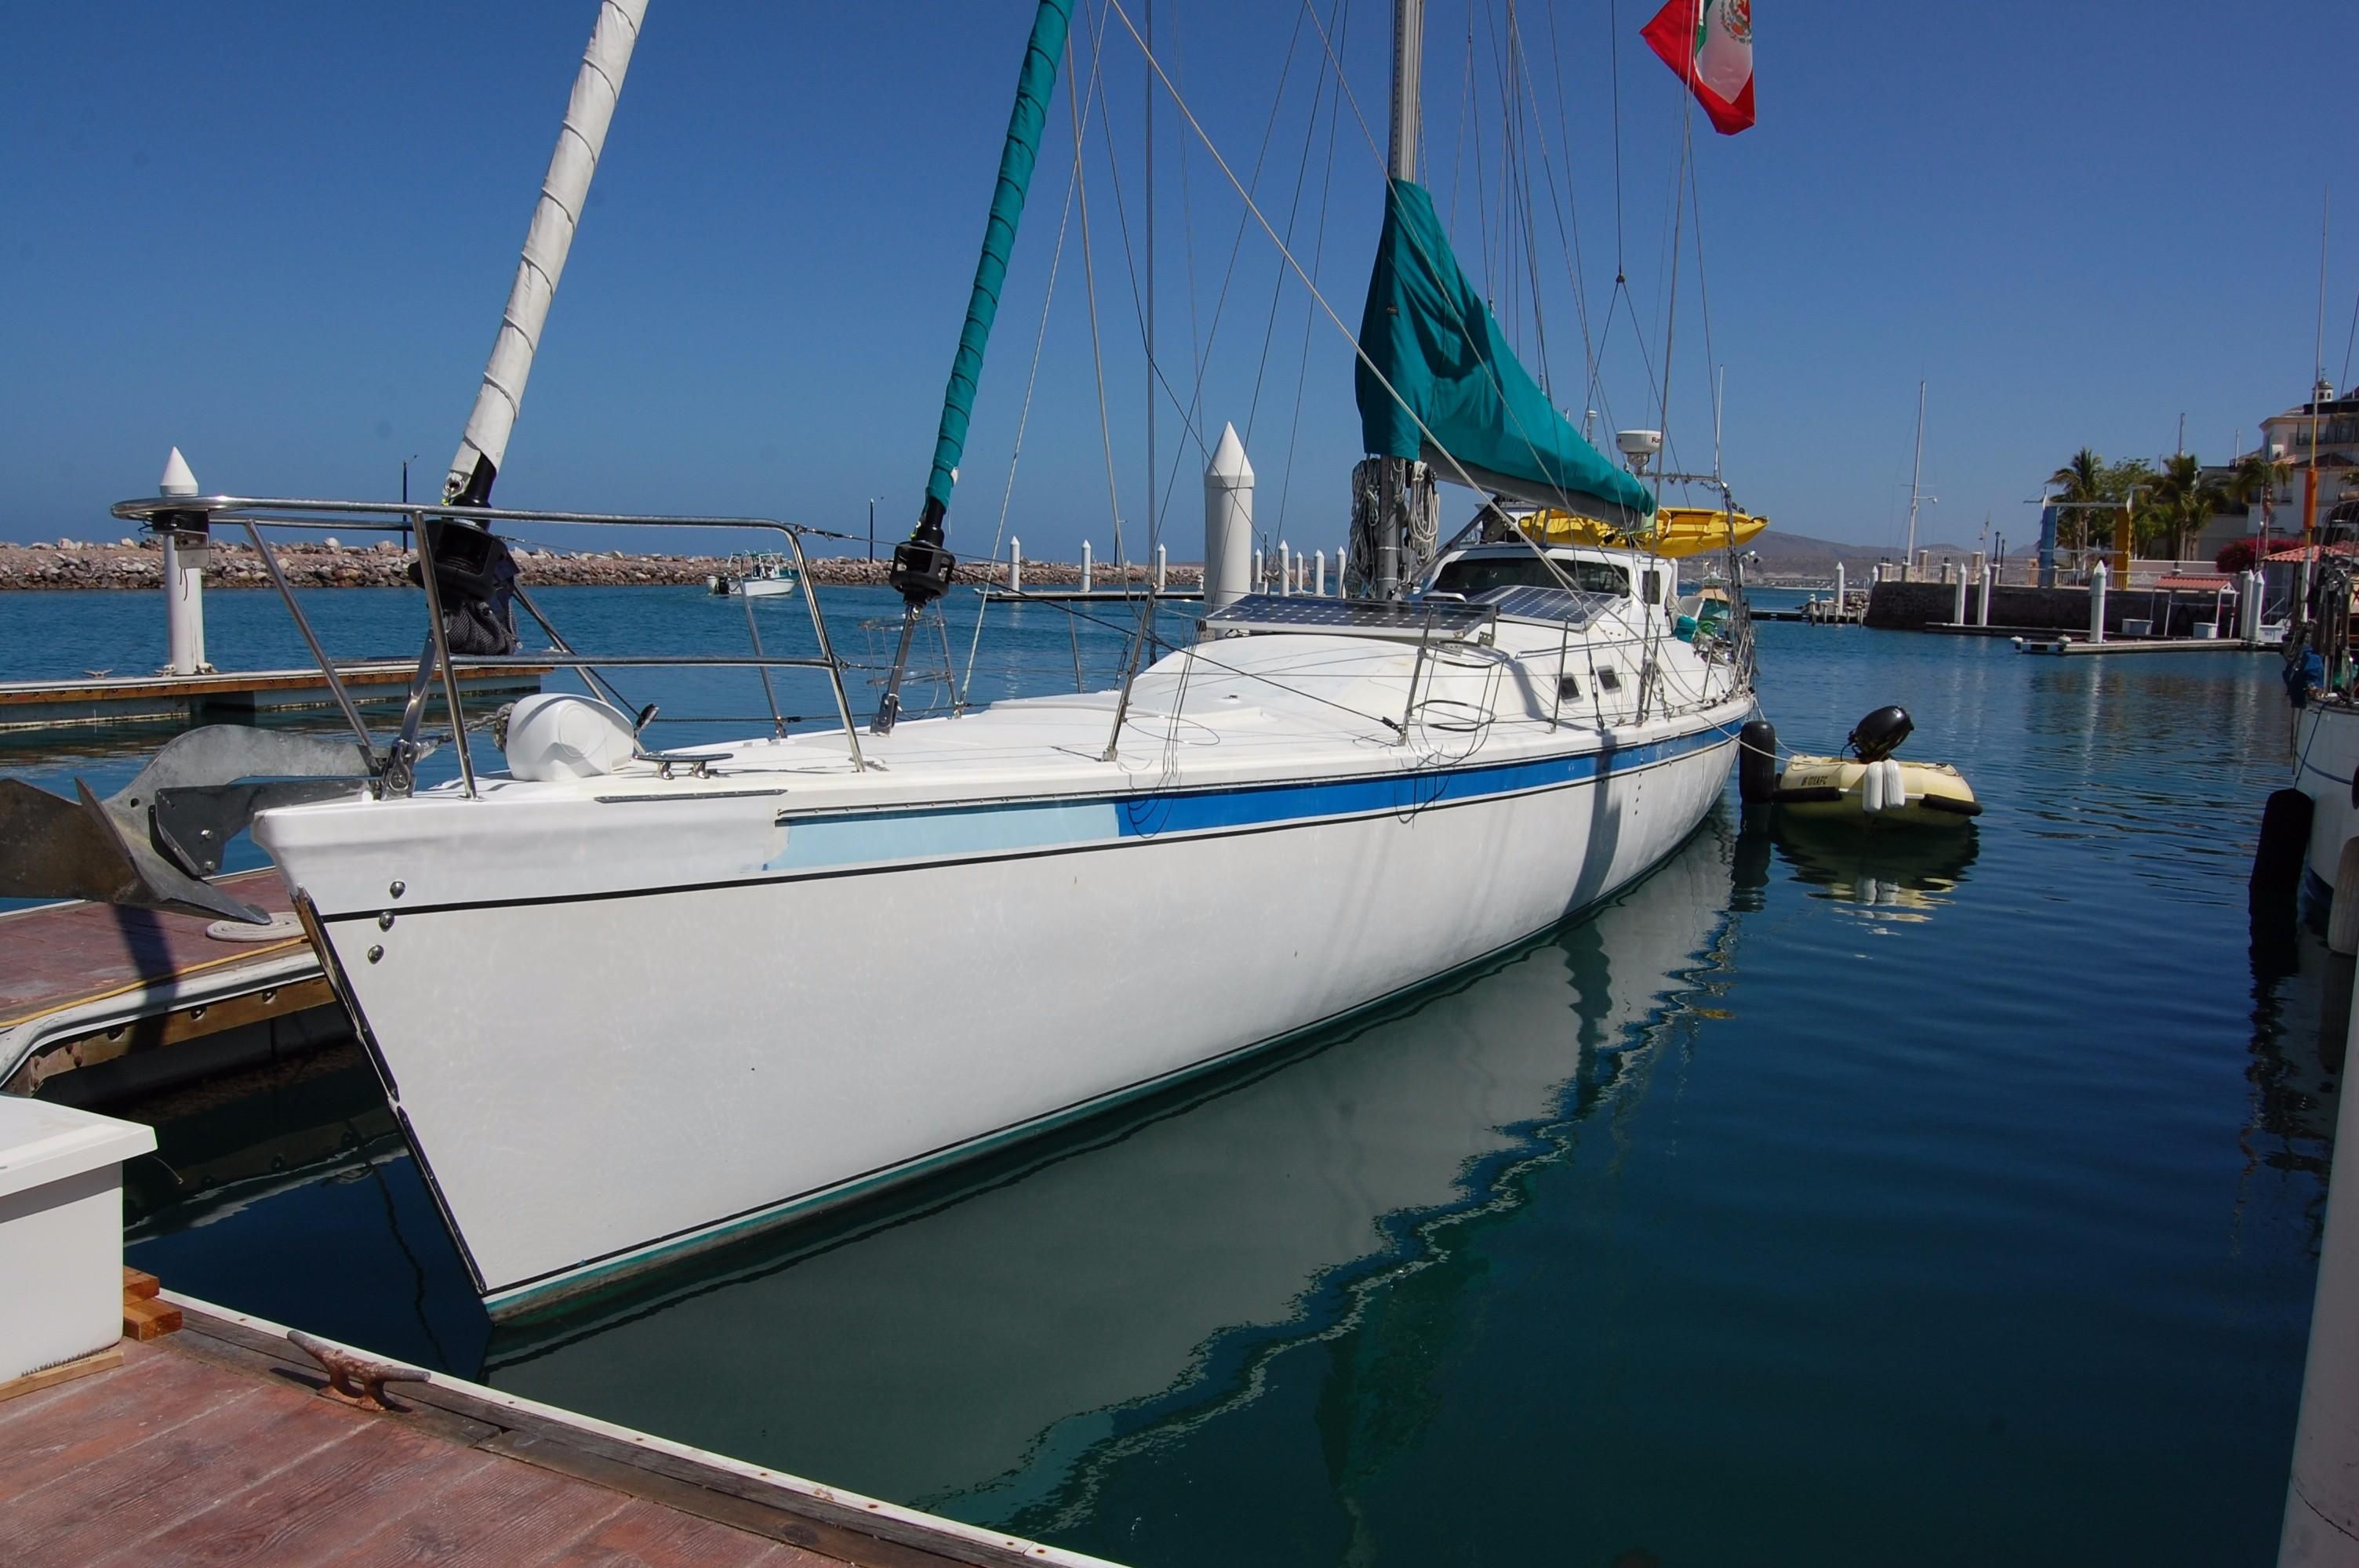 macgregor sailboat for sale